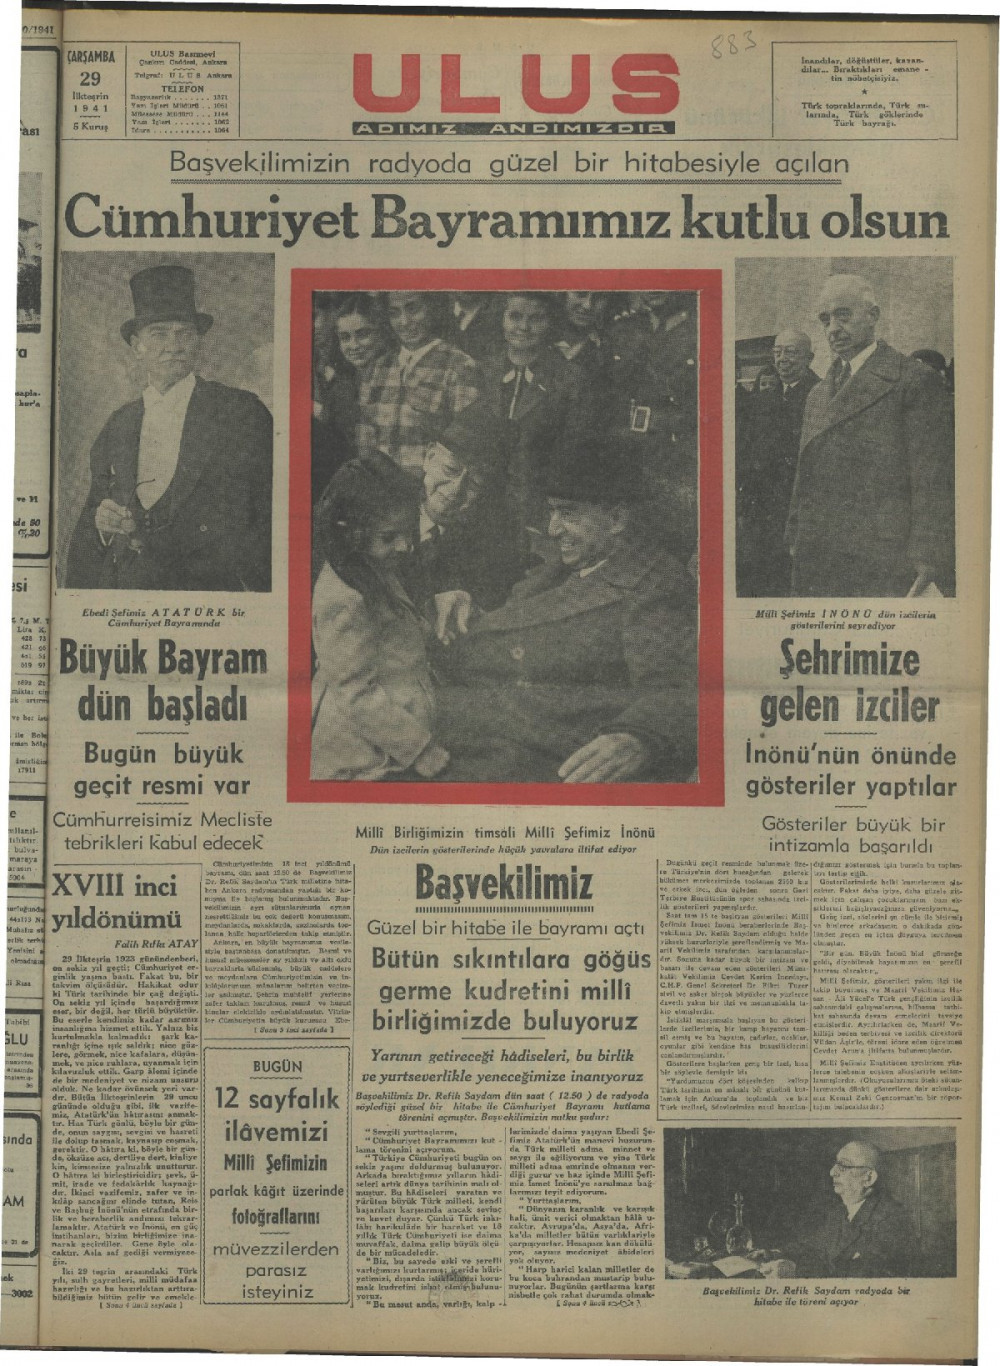 Arşivden çıkan Cumhuriyet Bayramı manşetleri - Resim: 31